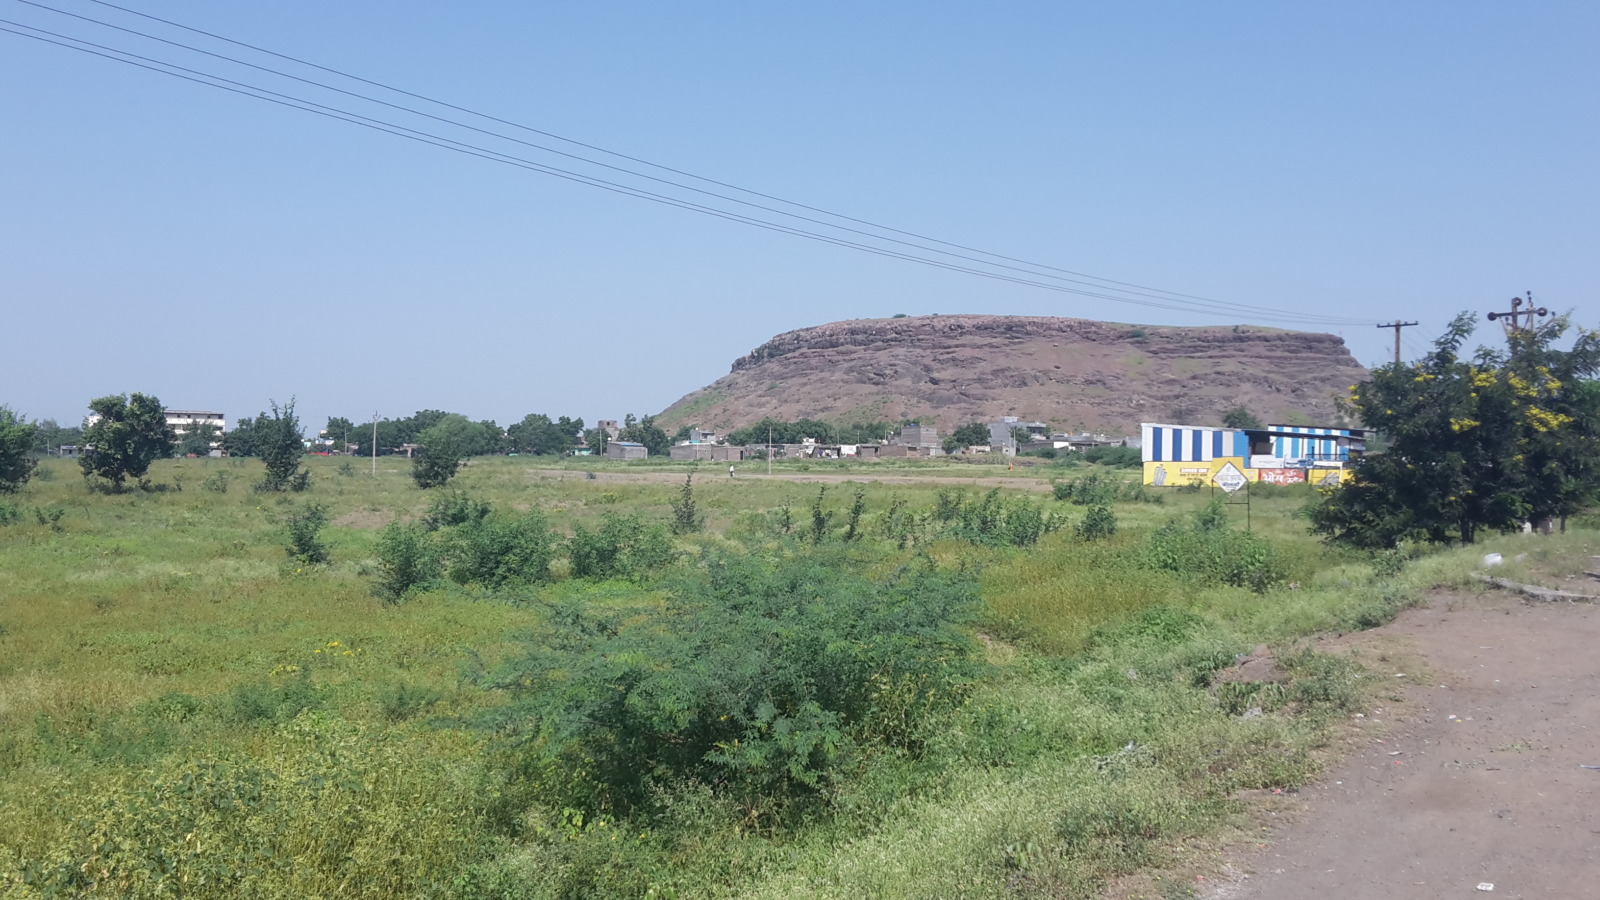 Hills near Nardana Maharashtra.